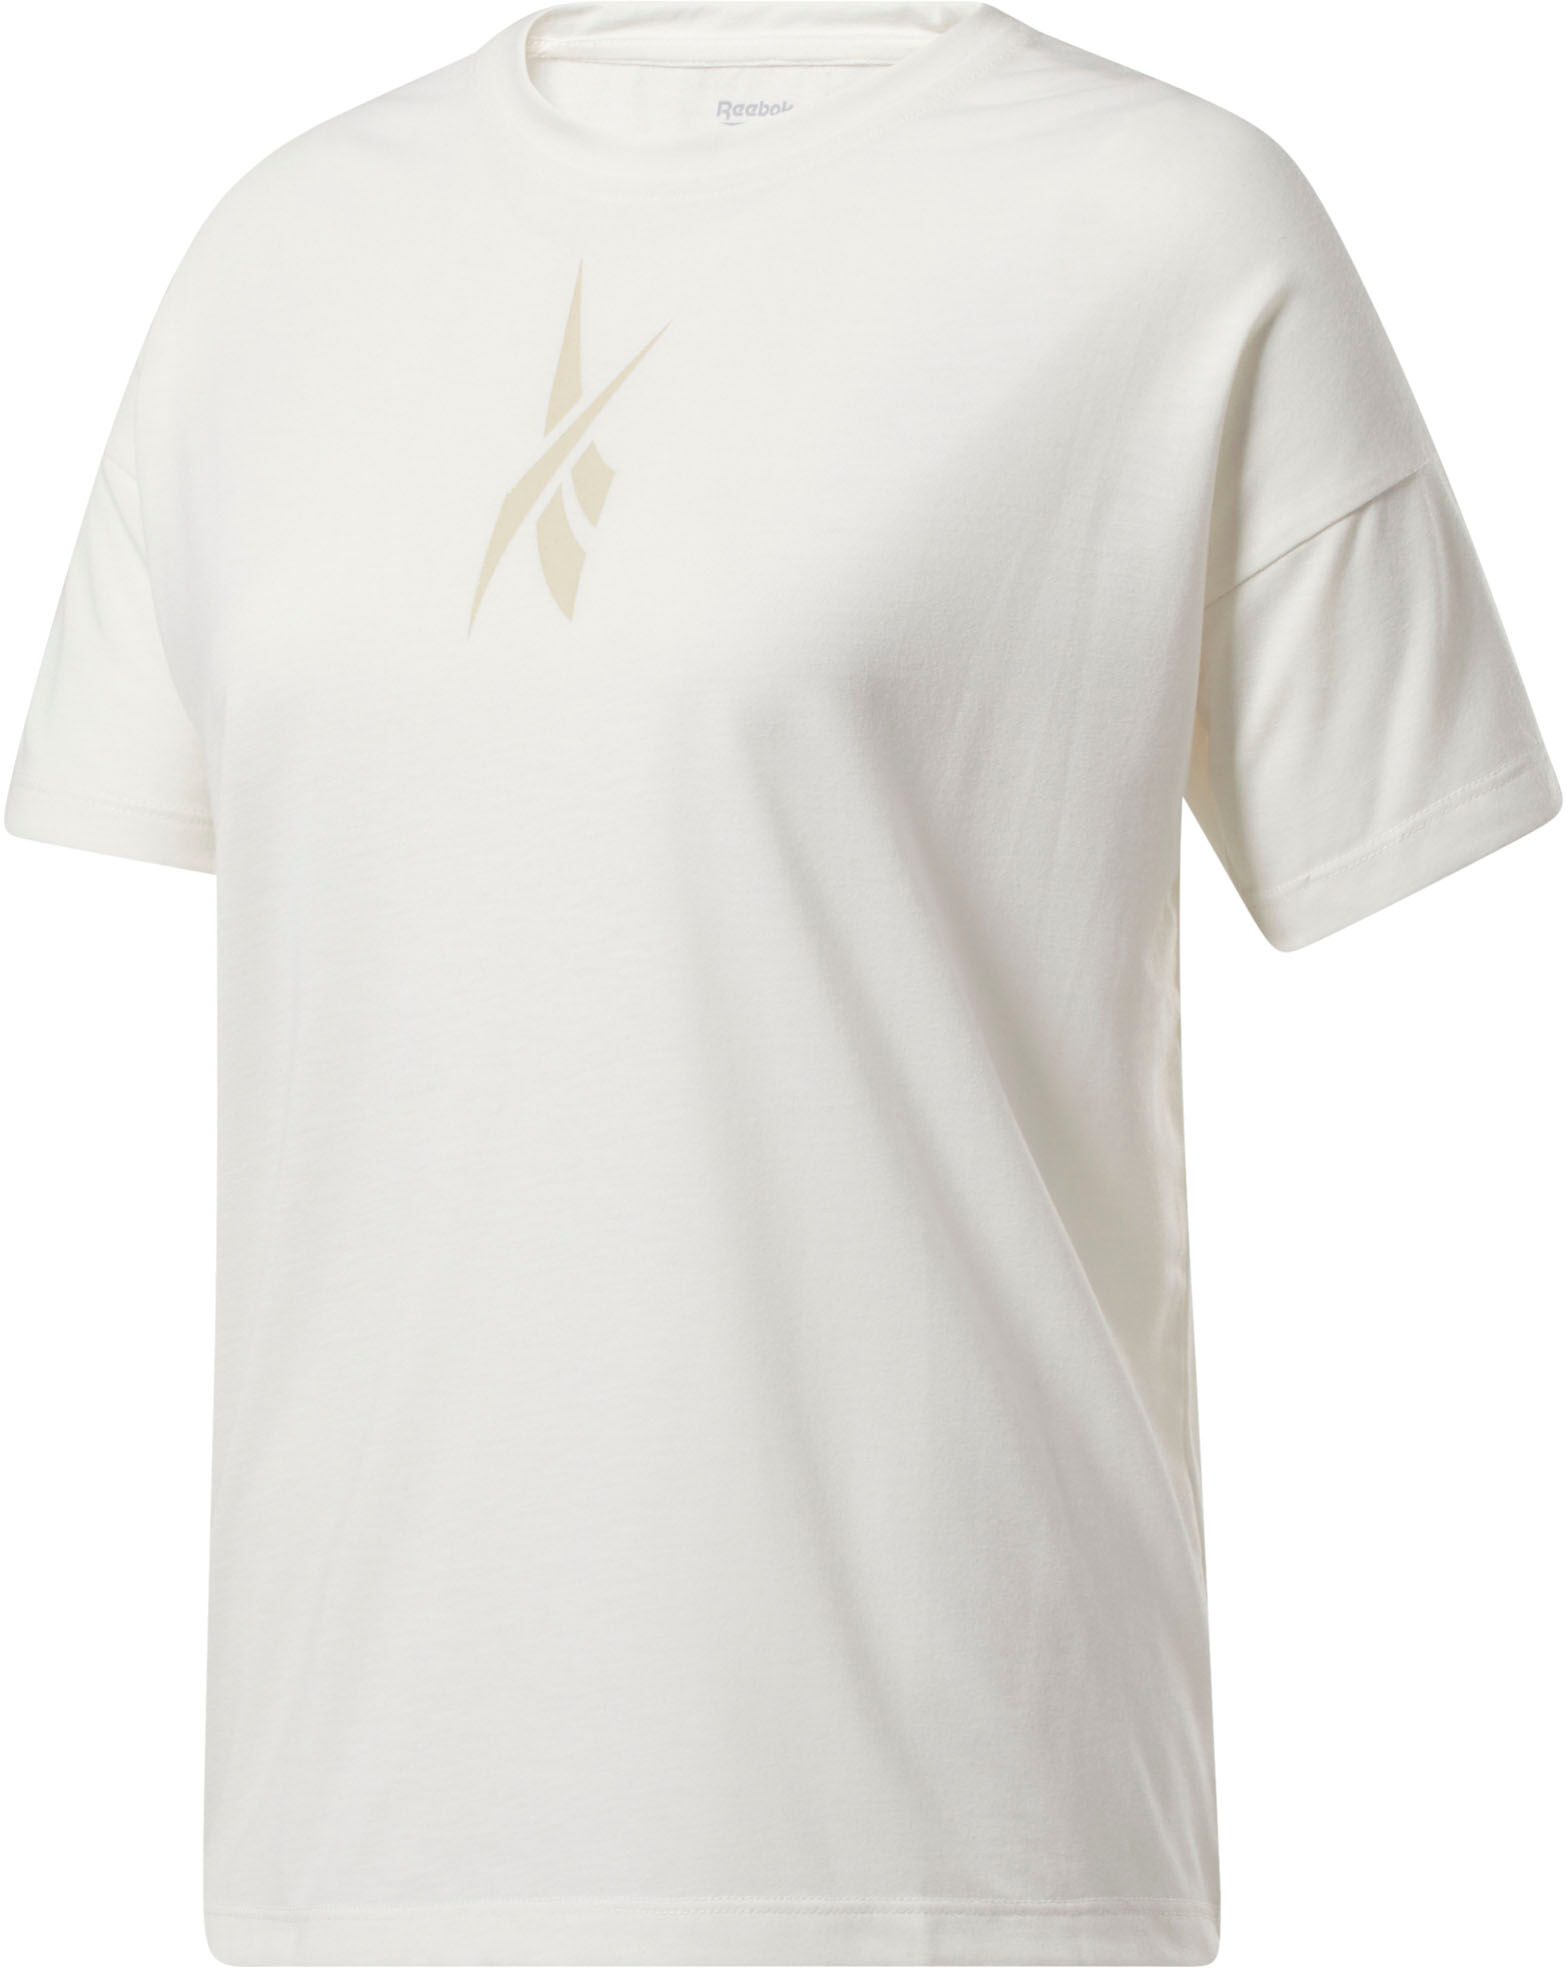 Reebok T-Shirt »GRAPHIC T-SHIRT« weiss Größe L (42/44) M (38/40) S (34/36) XL (46/48) XS (30/32)